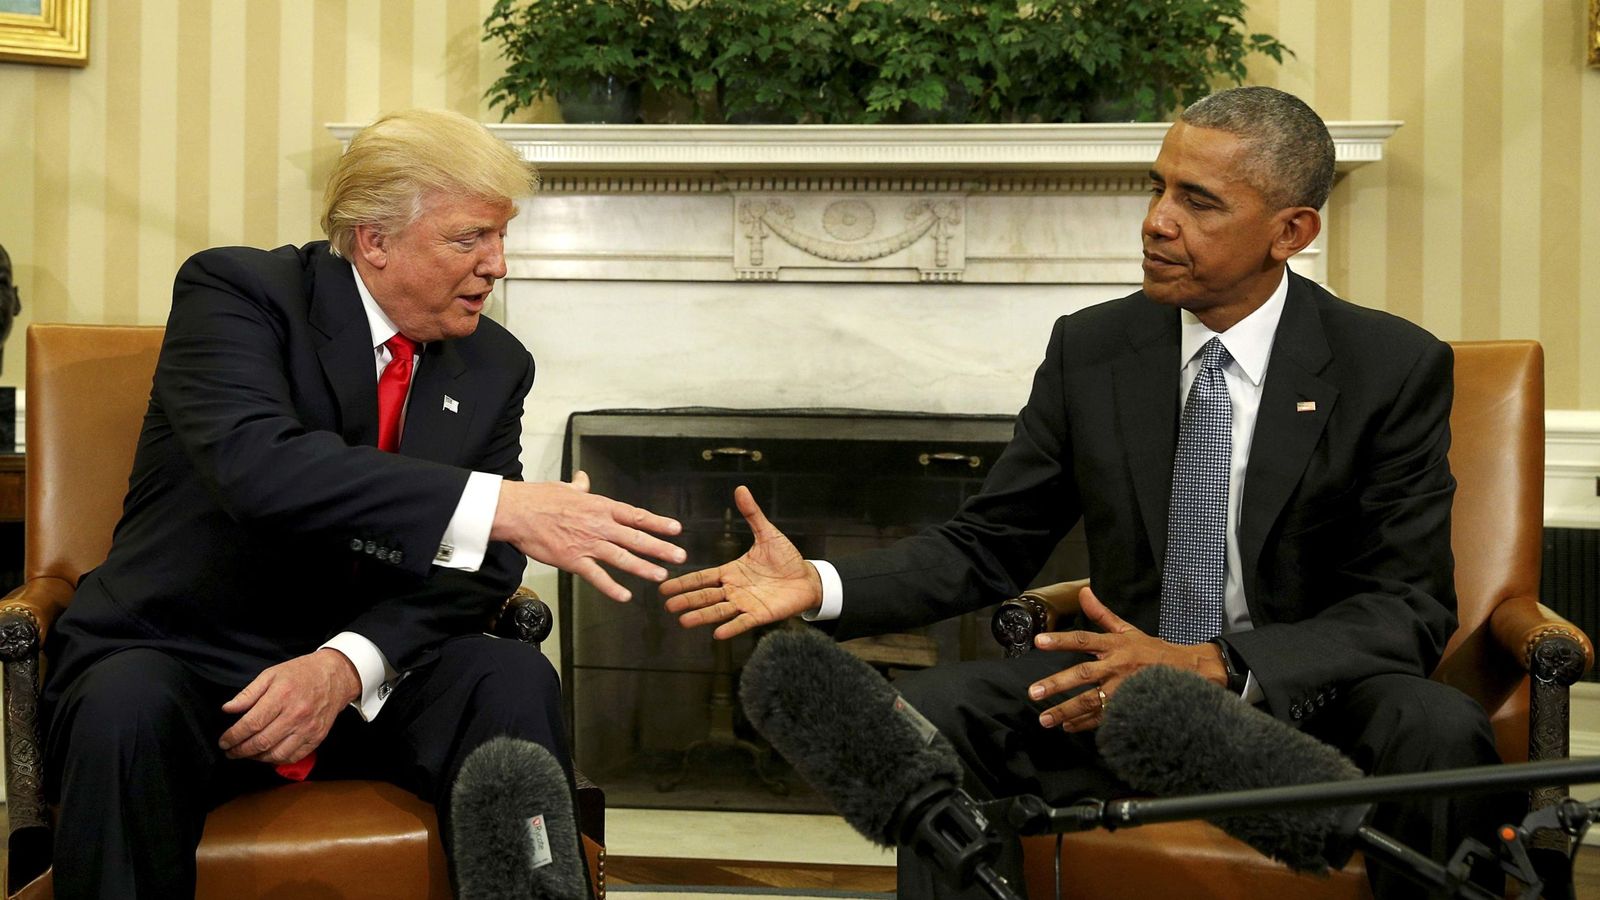 Foto: El presidente Obama se encuentra con Donald Trump en el Despacho Oval tras la victoria de éste, el 10 de noviembre de 2016 (Reuters)